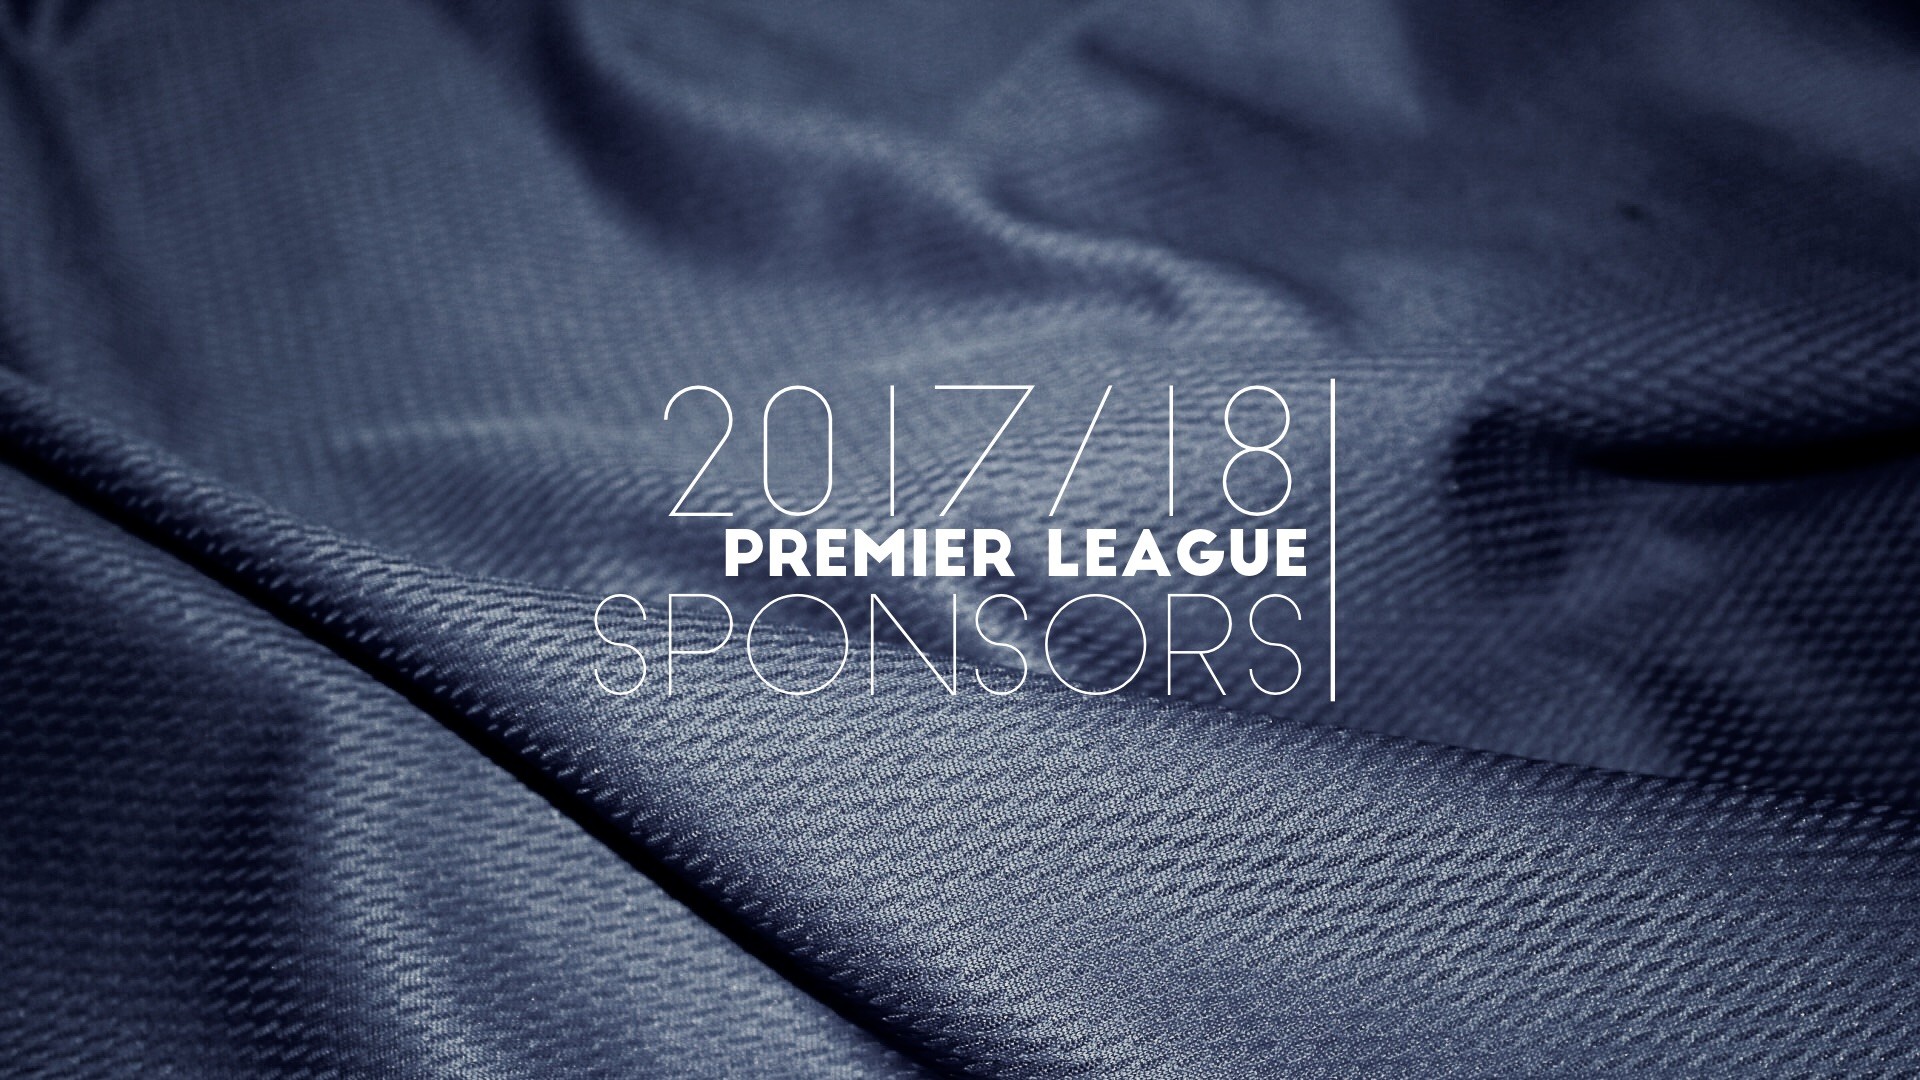 1920x1080 2017/18 Premier League Sponsors